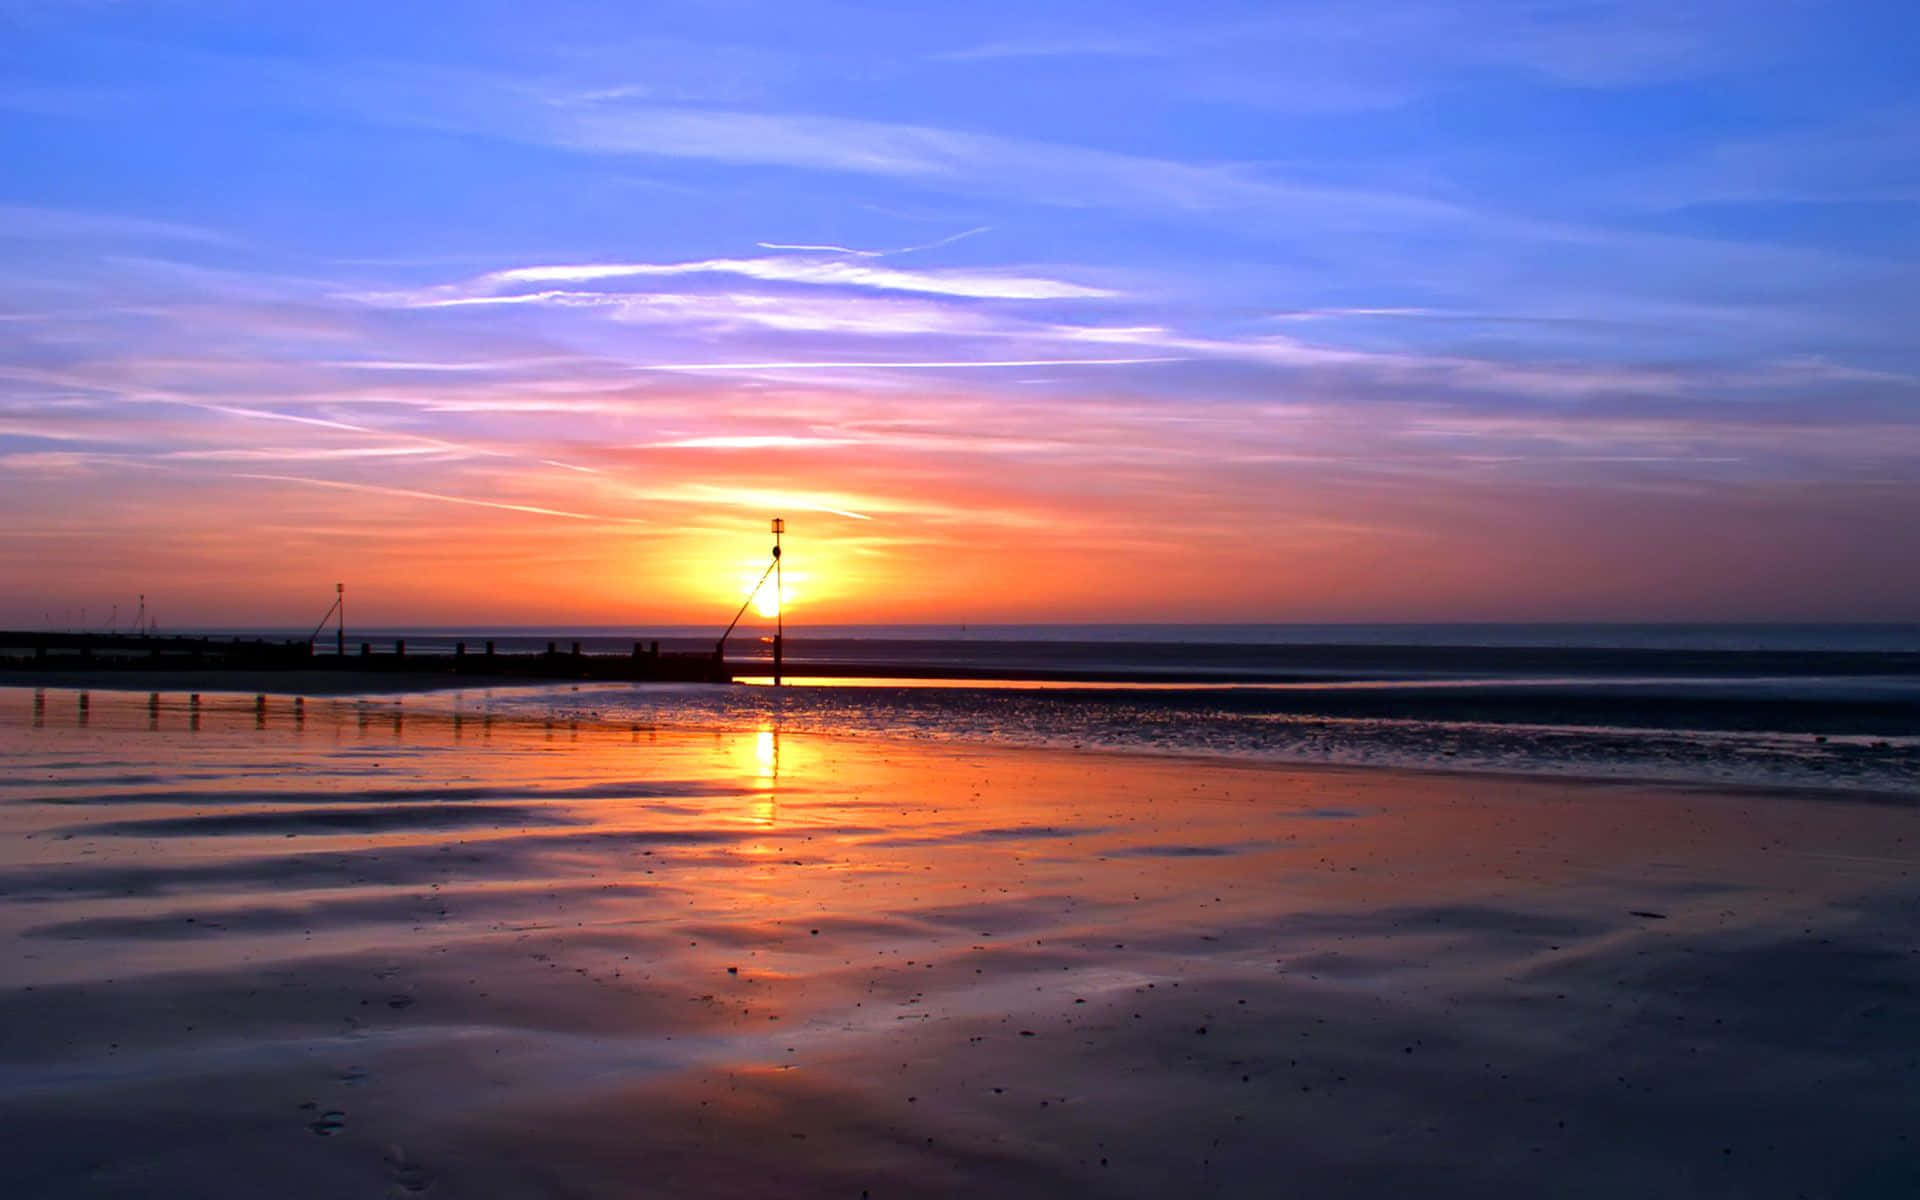 Enjoy the golden beauty of a tranquil beach sunset